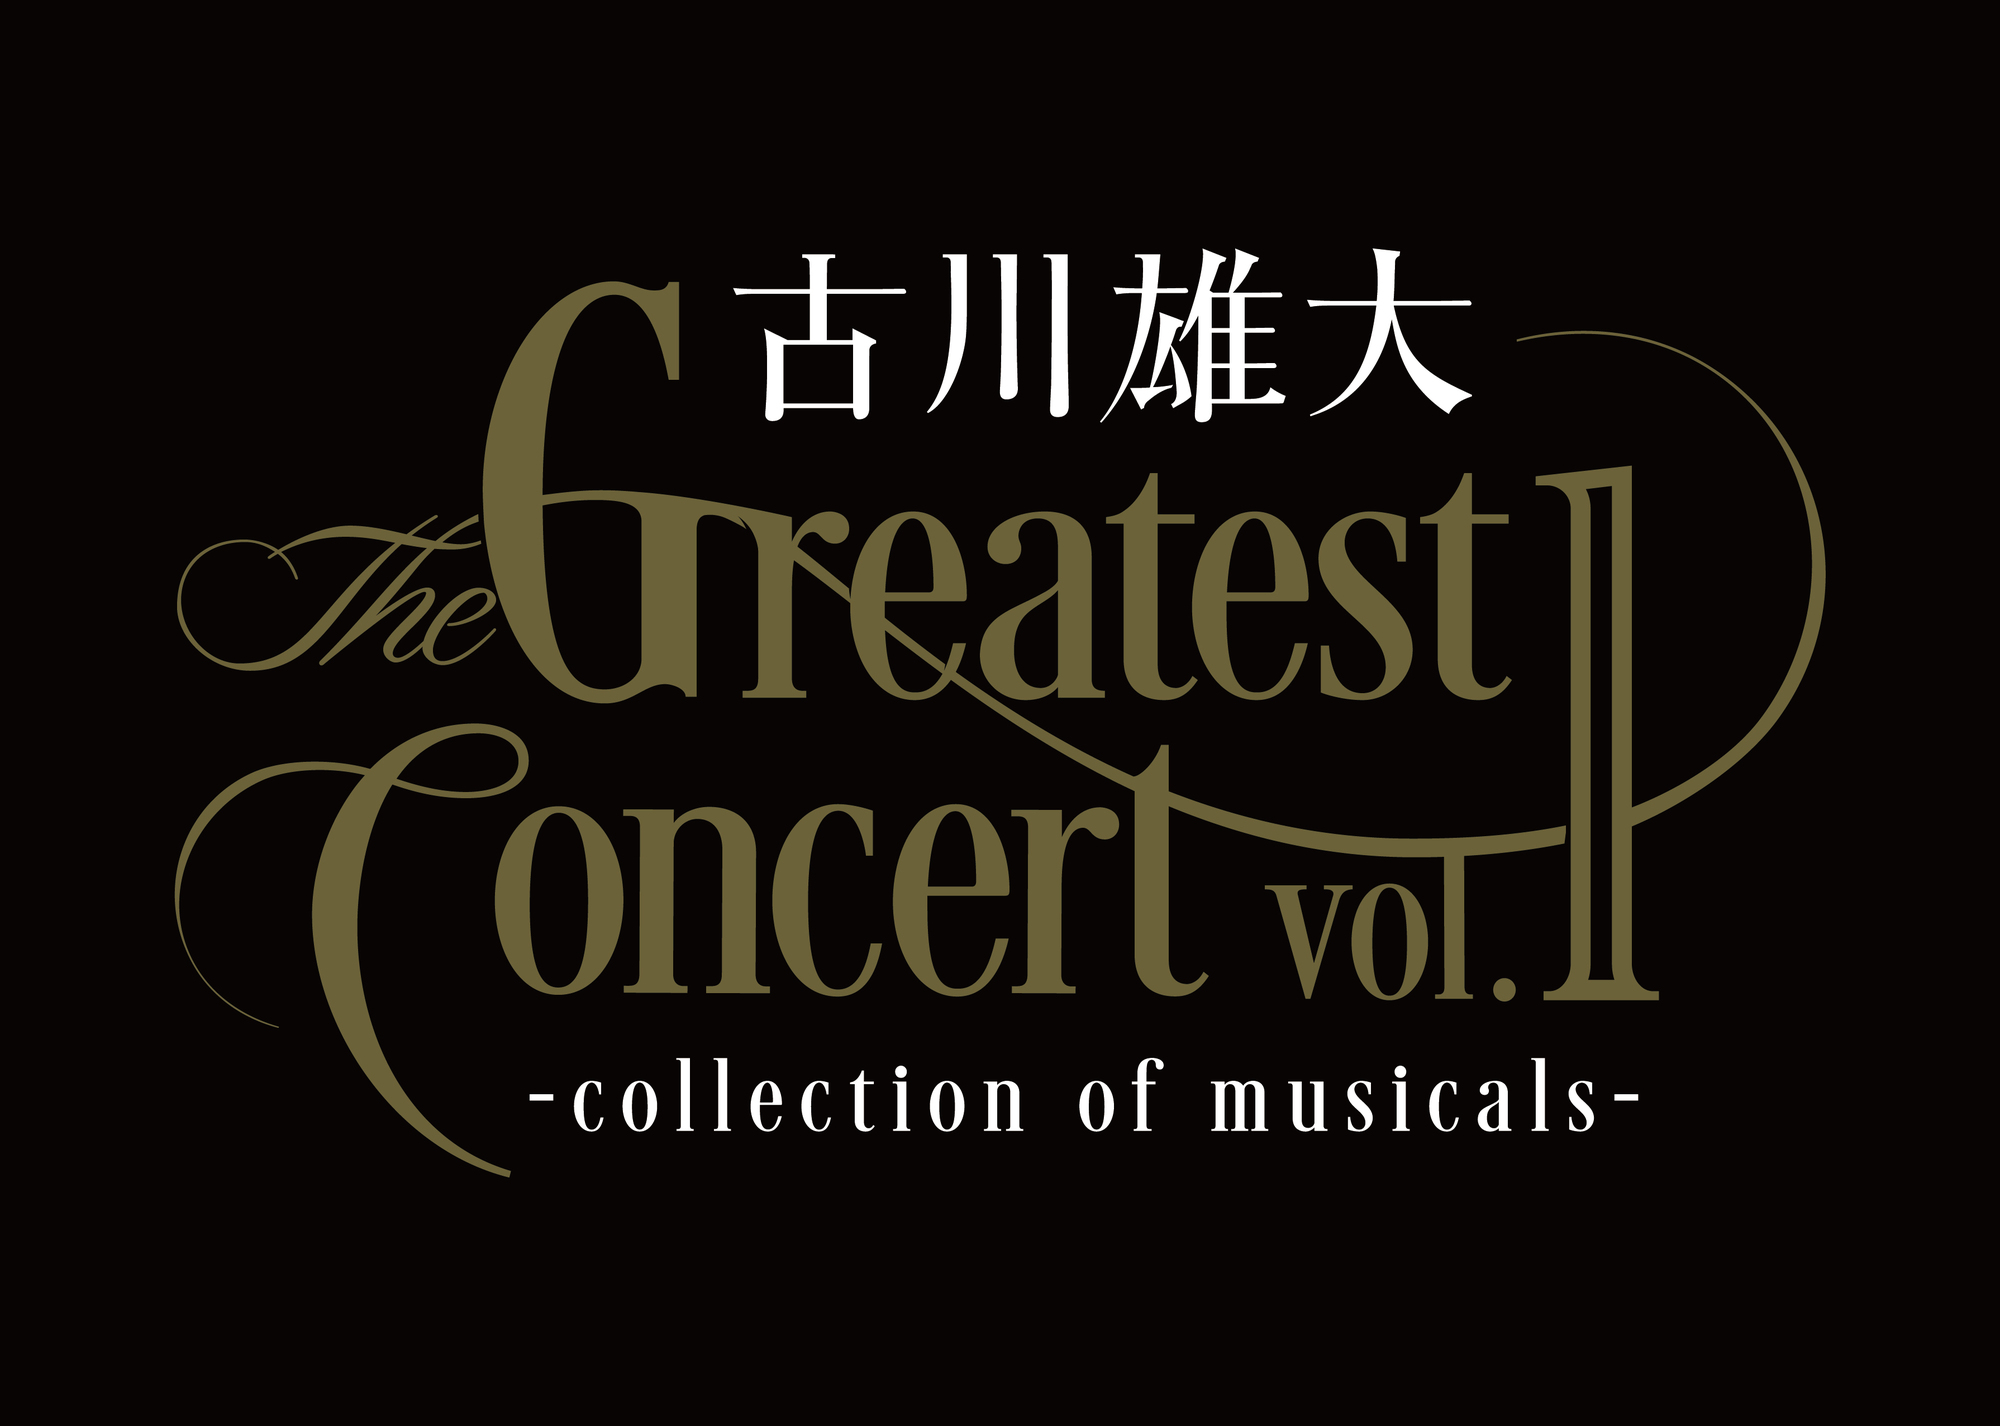 古川雄大 The Greatest Concert vol.1 -collection of musicals 